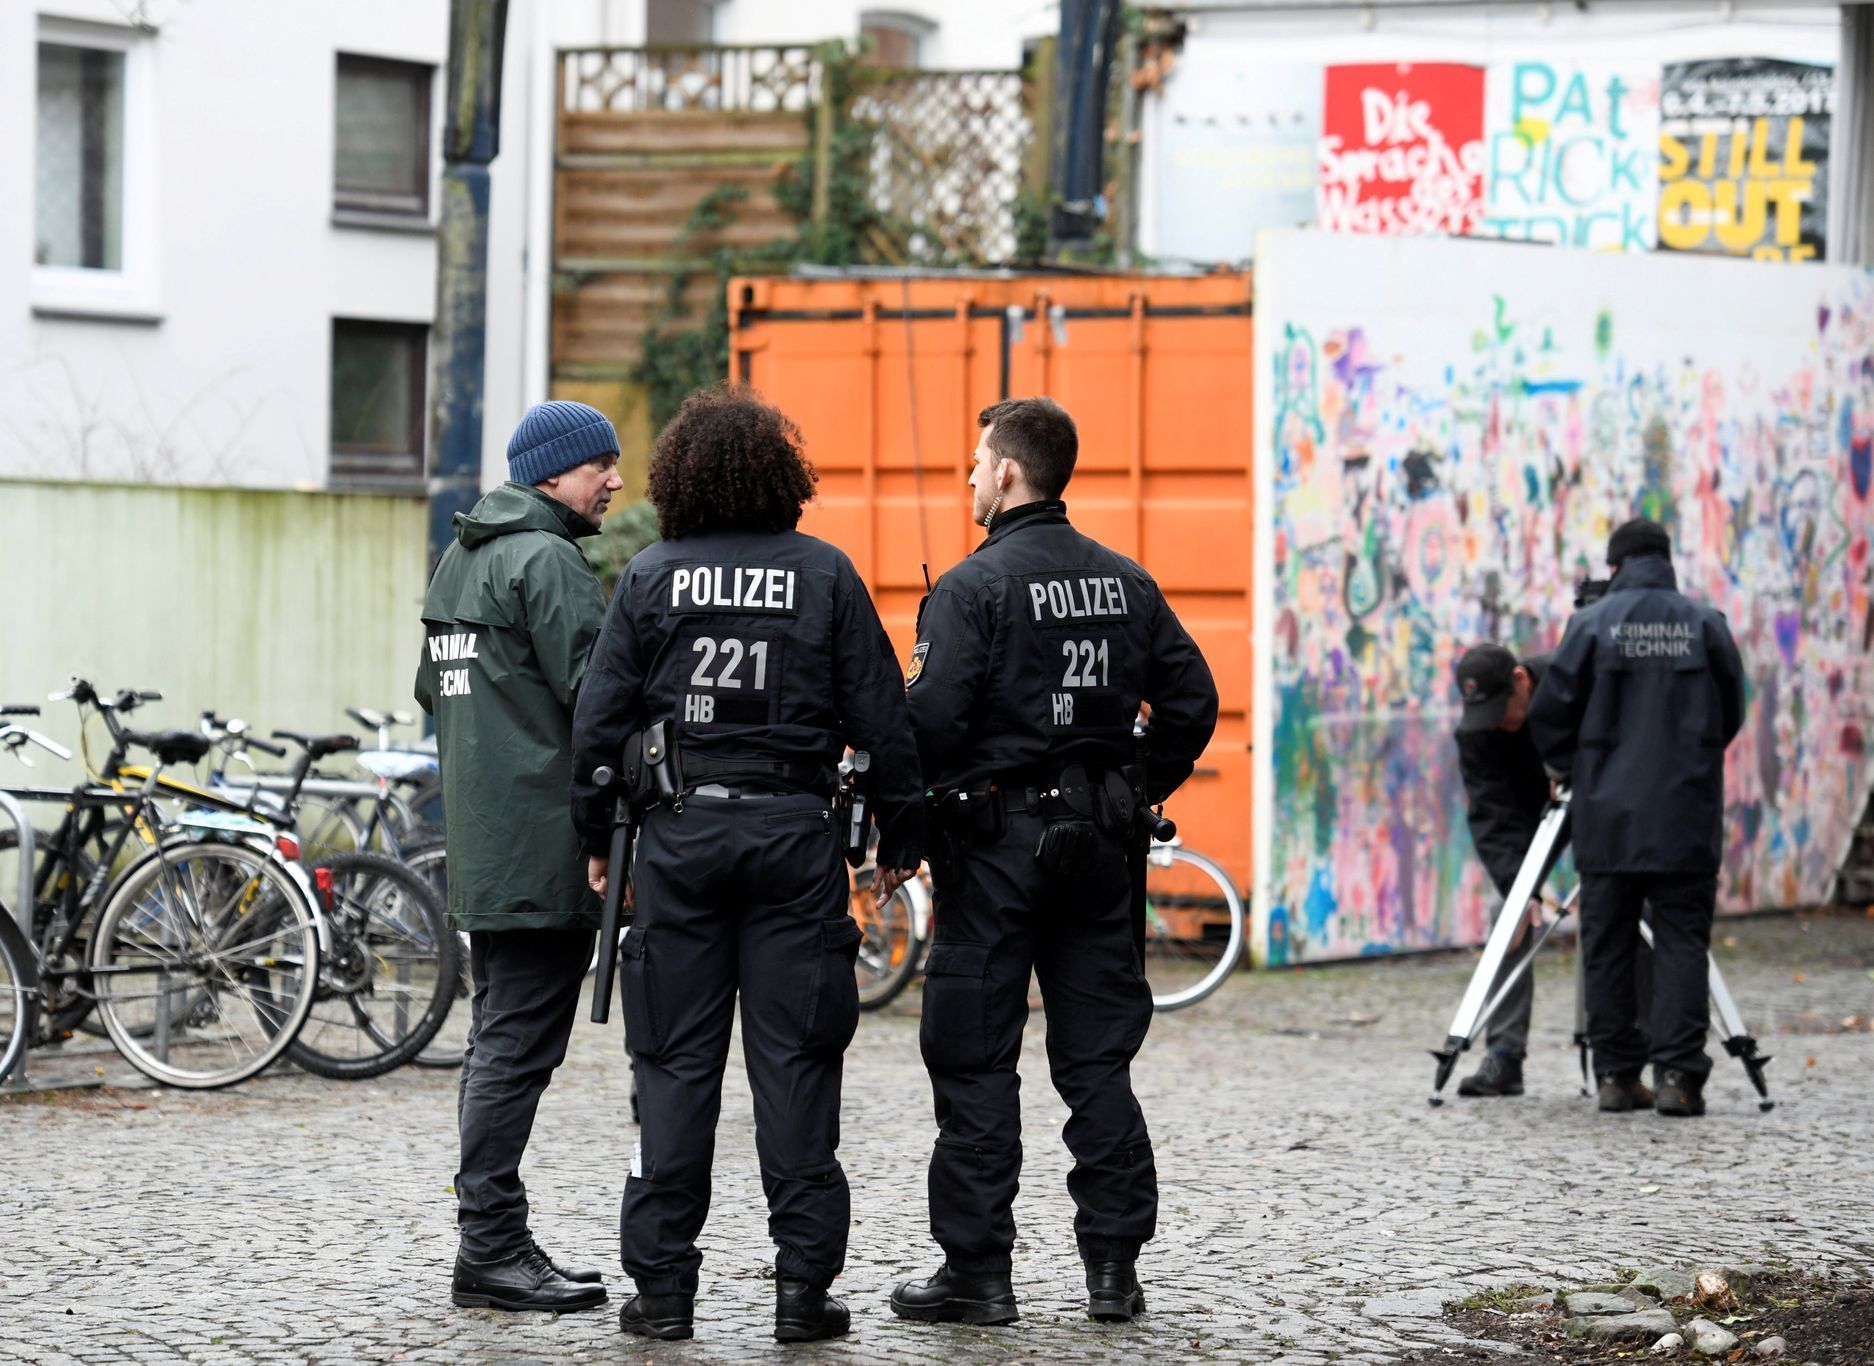 Magnitz AfD vyšetřování útoku v Brémách